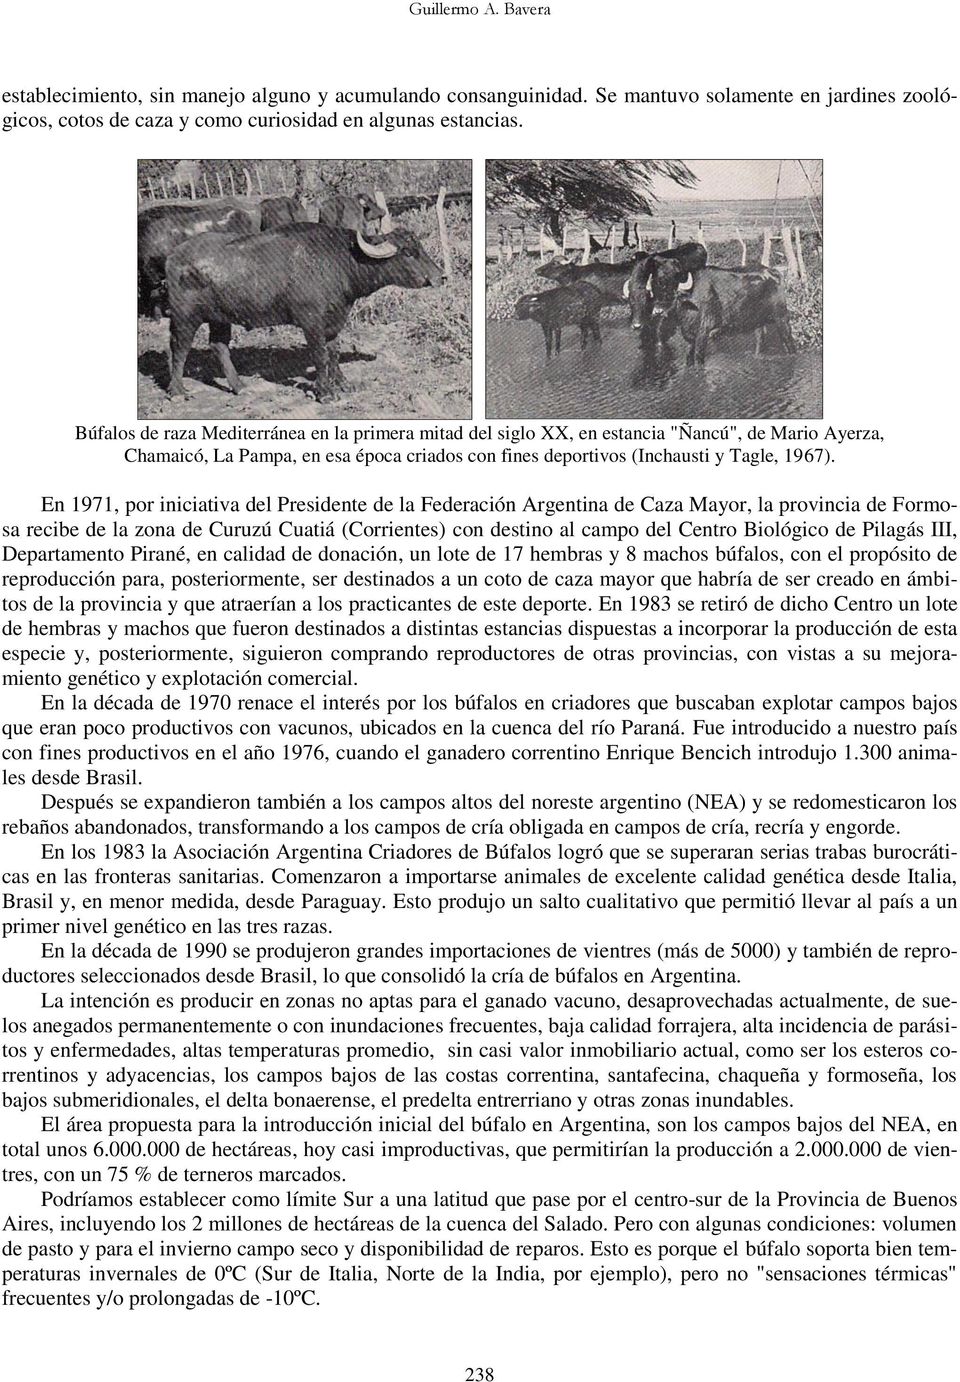 En 1971, por iniciativa del Presidente de la Federación Argentina de Caza Mayor, la provincia de Formosa recibe de la zona de Curuzú Cuatiá (Corrientes) con destino al campo del Centro Biológico de